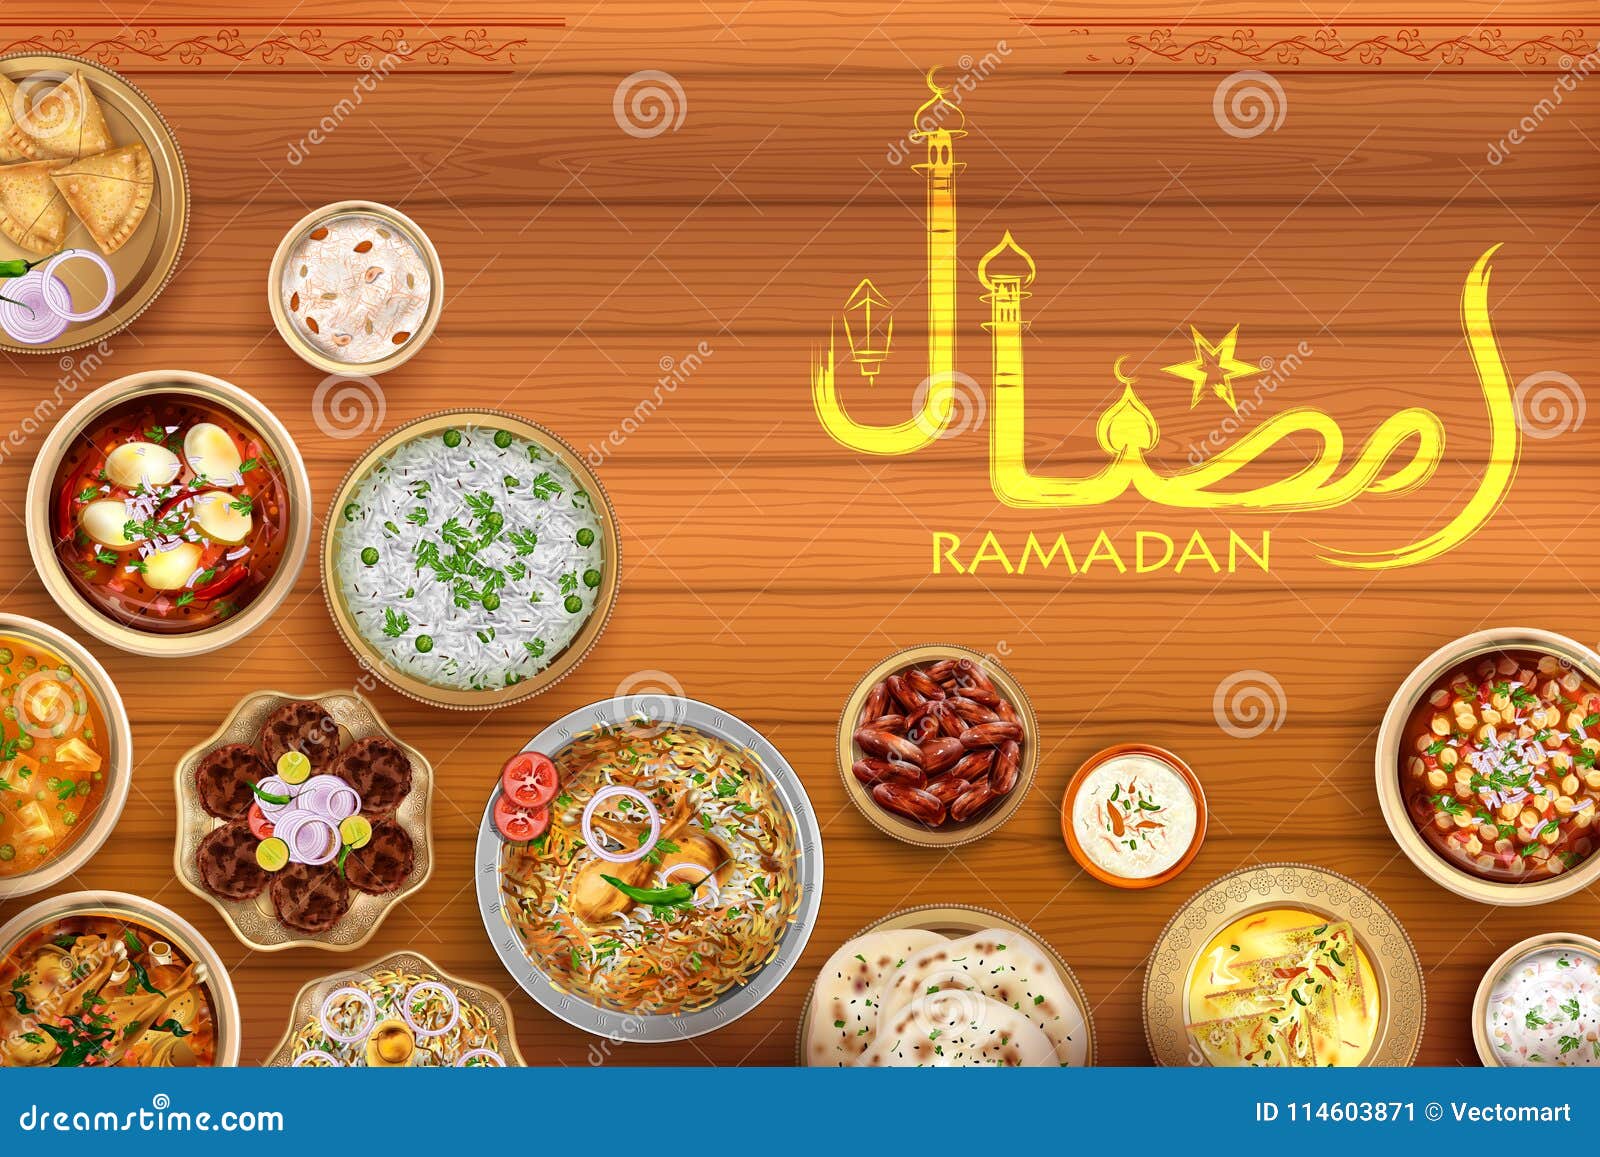 Iftar Party Invitation Greeting Ramadan Kareem Generous Ramadan ...